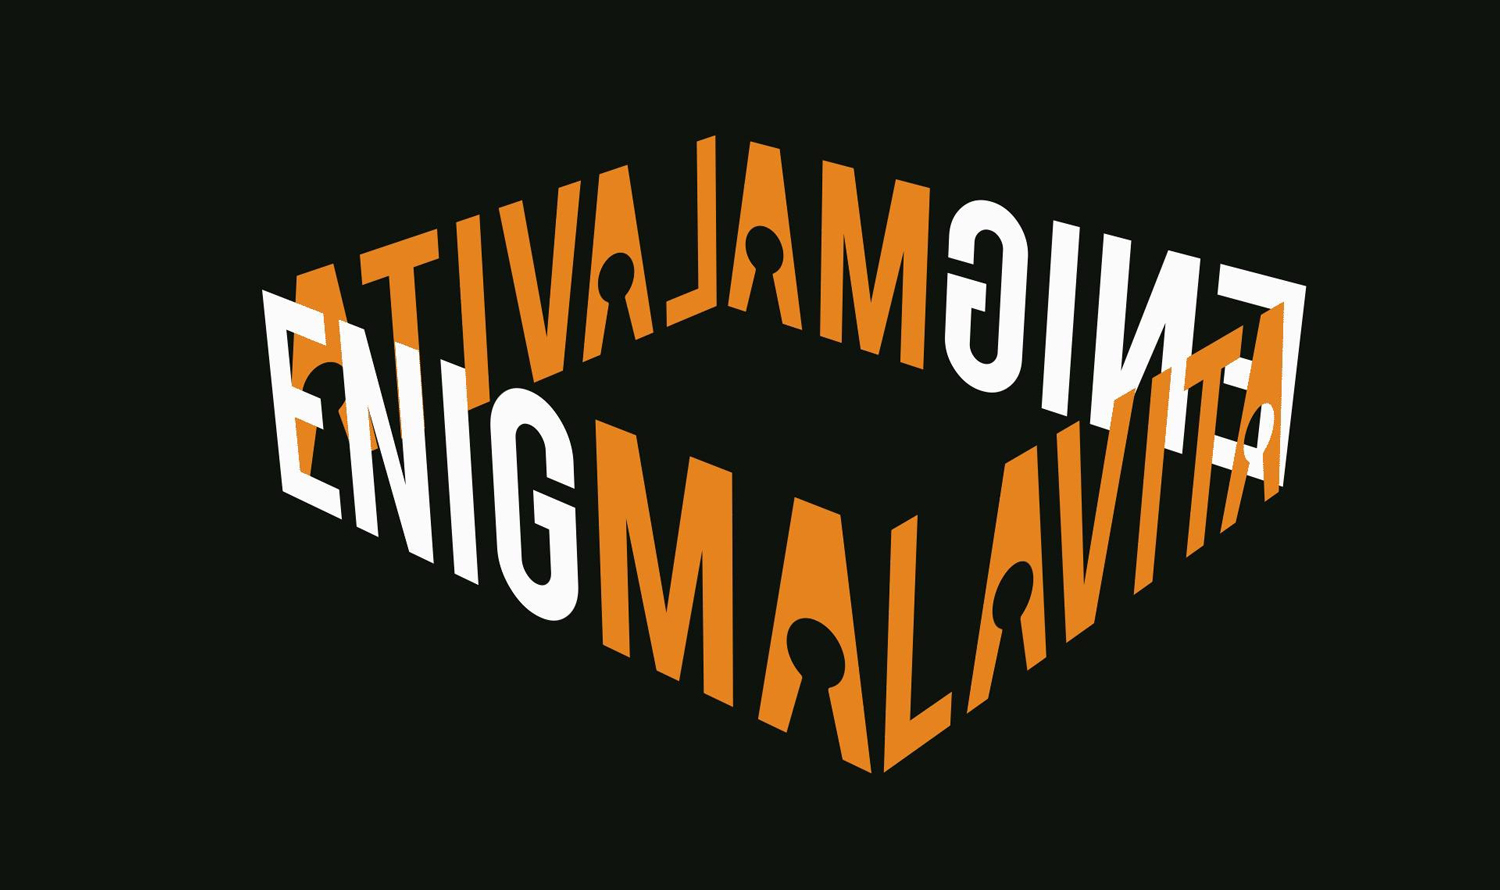 logo di ENIGMALAVITA, progetto a cui lavora ETT che si propone di salvaguardare e valorizzare i beni confiscati alla mafia